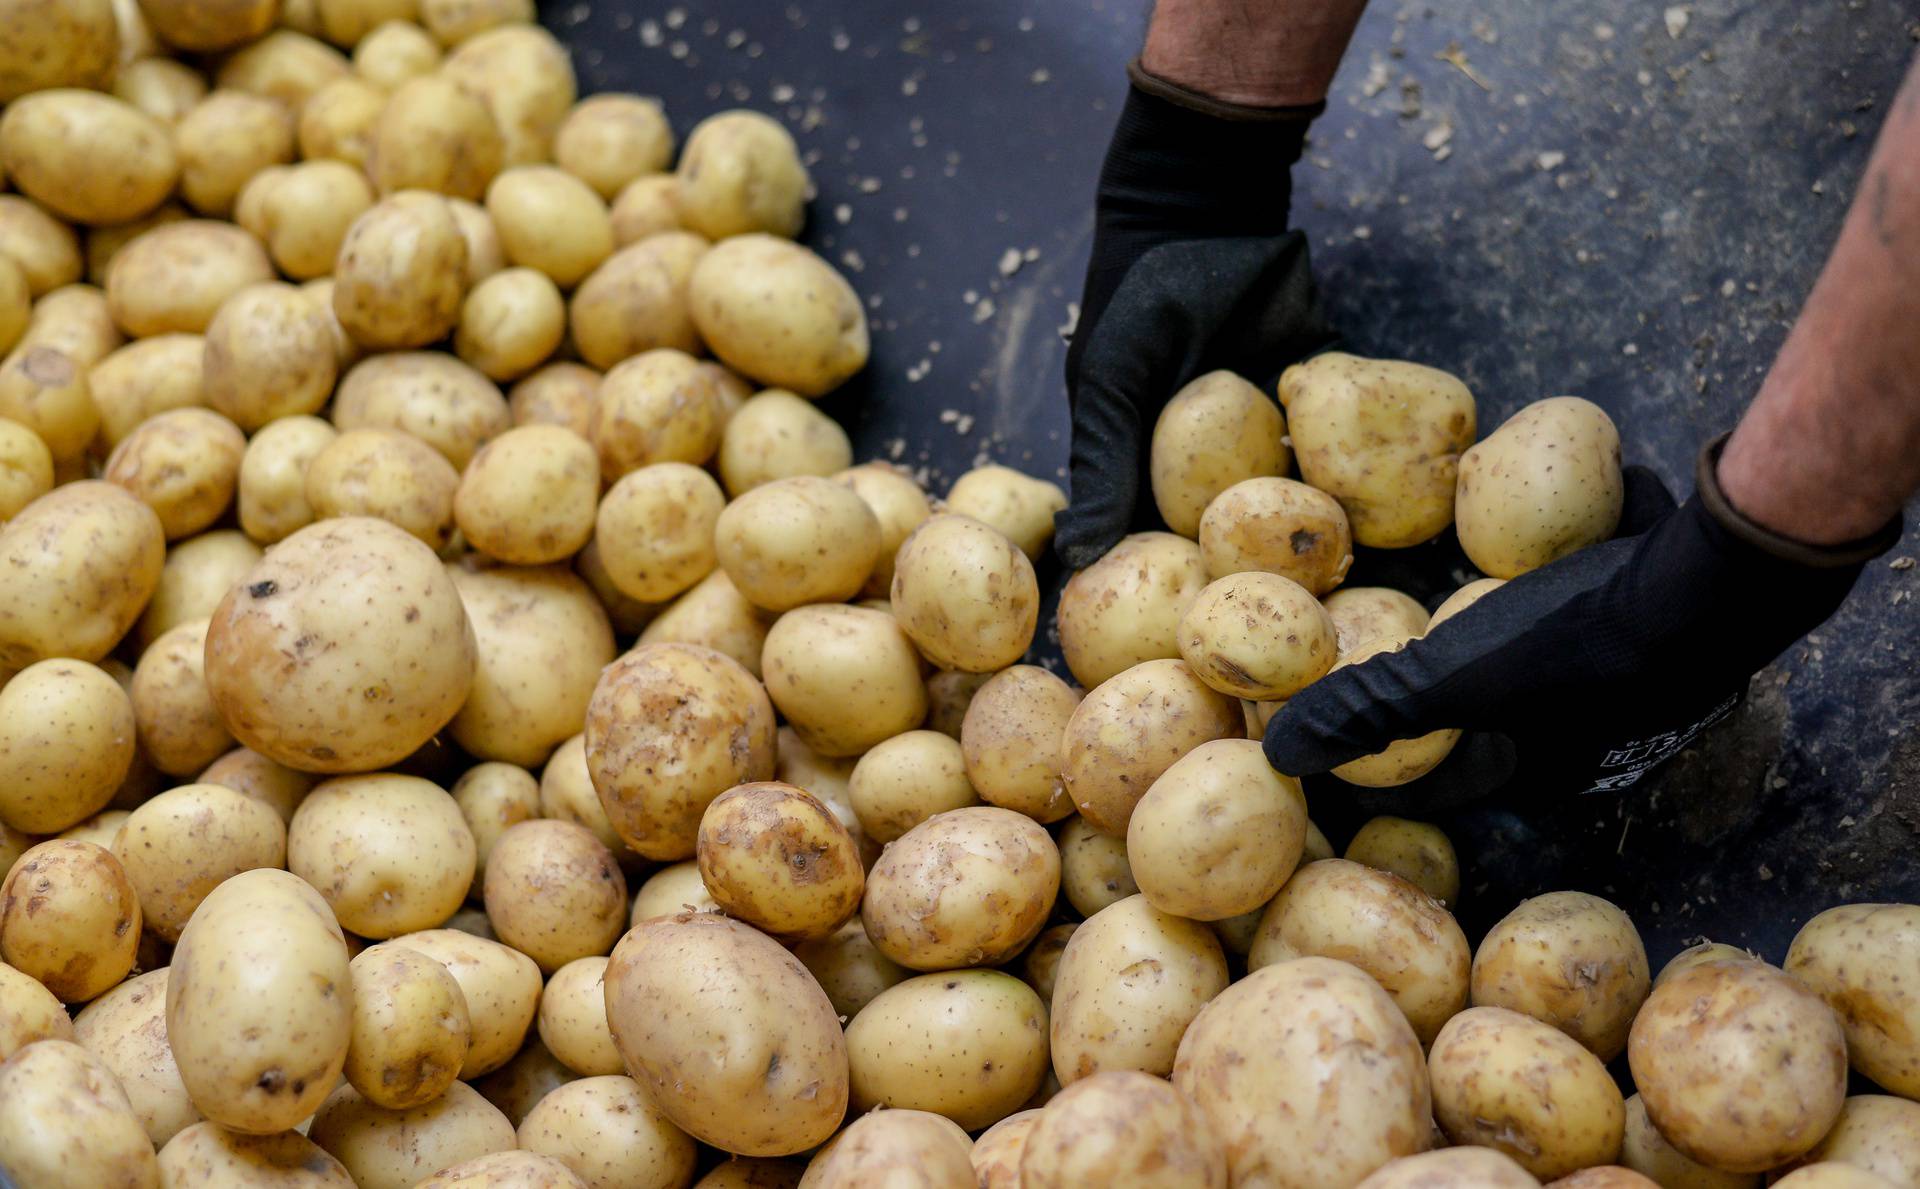 Ova međimurska tvrtka oduševit će vas svojom pričom o uspjehu, a saznat ćete i kako nastaje krumpir koji svakodnevno jedemo